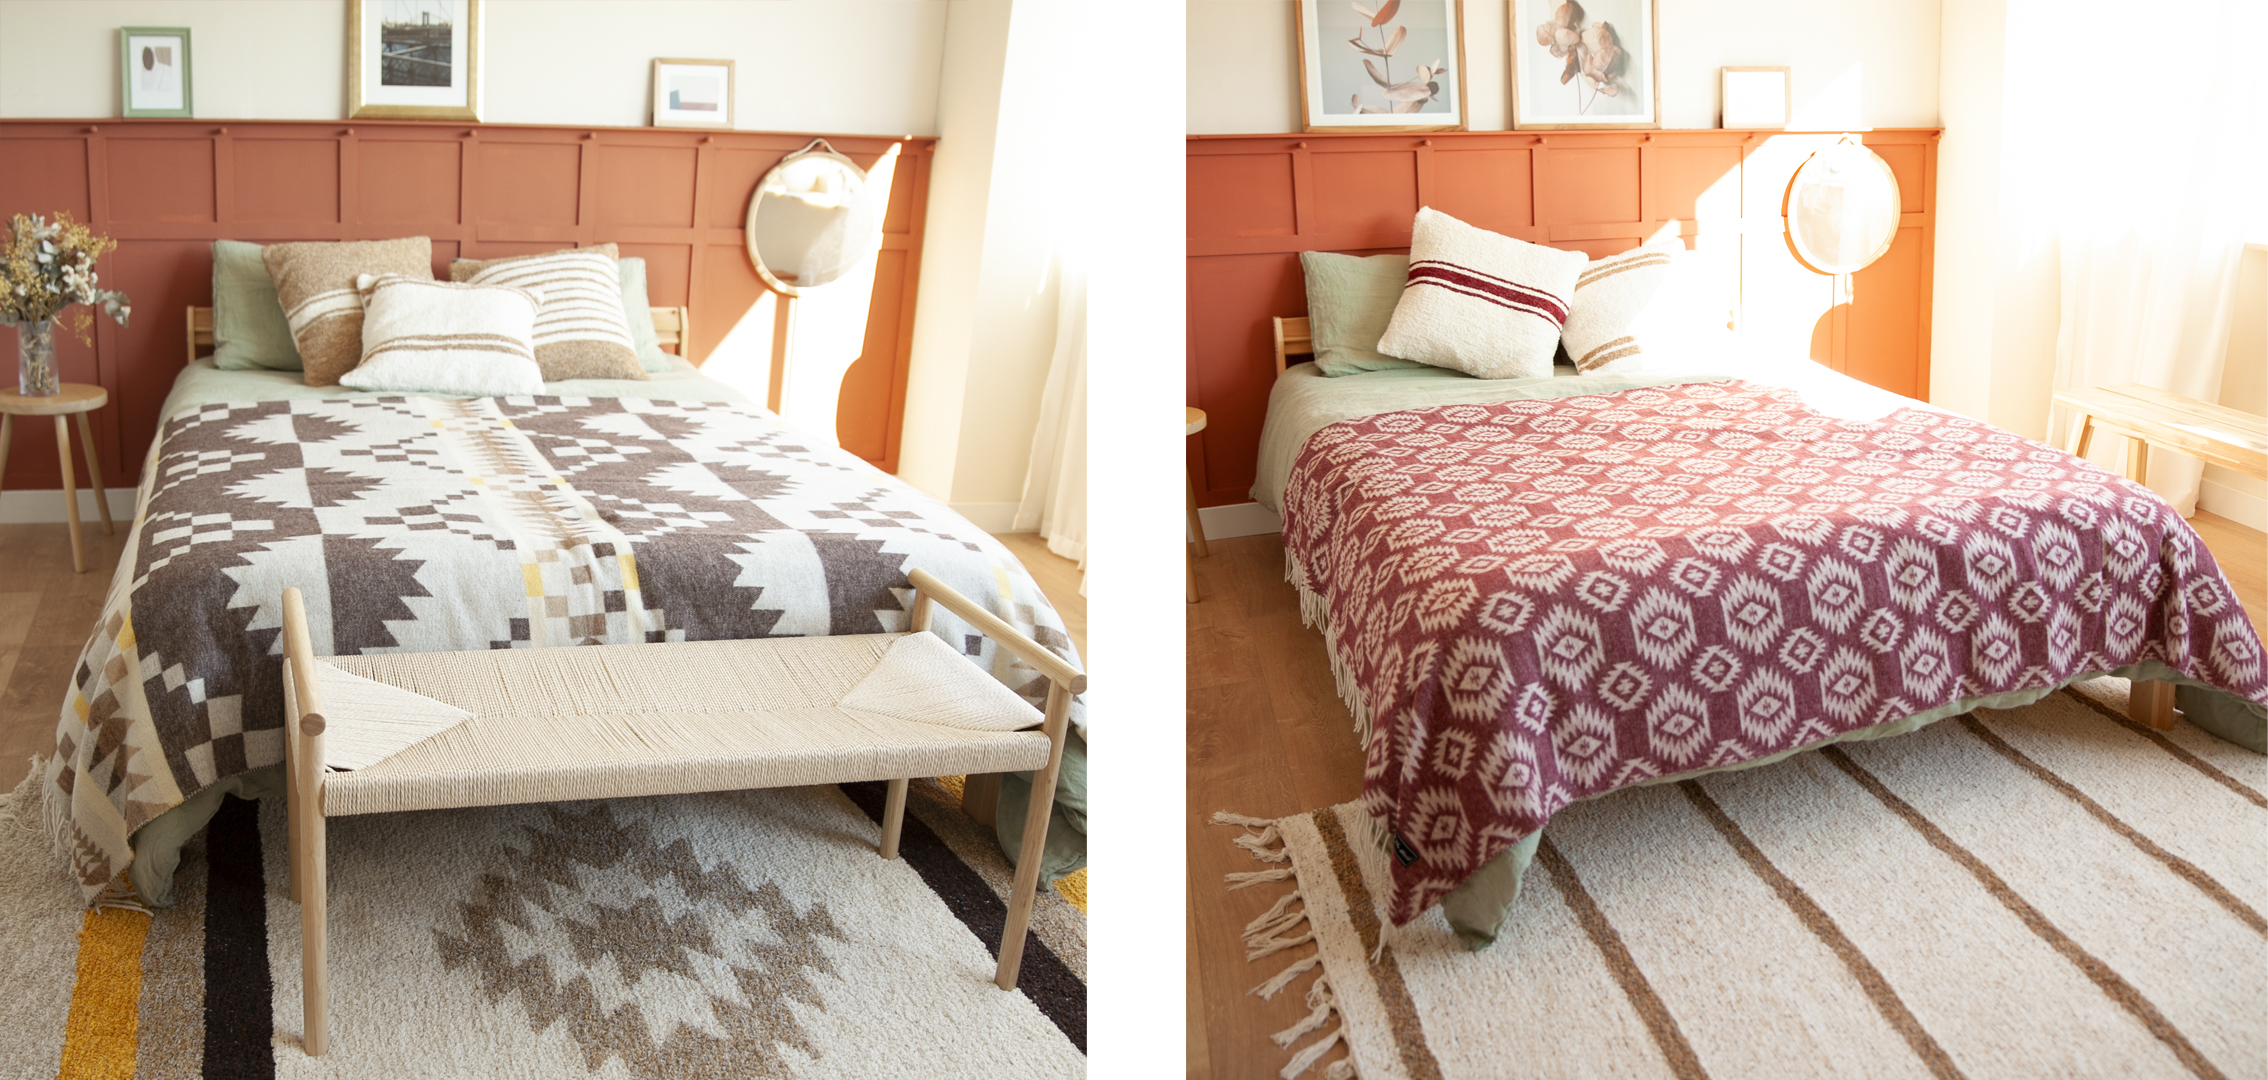 Chambres à coucher décorées avec des textiles ethniques